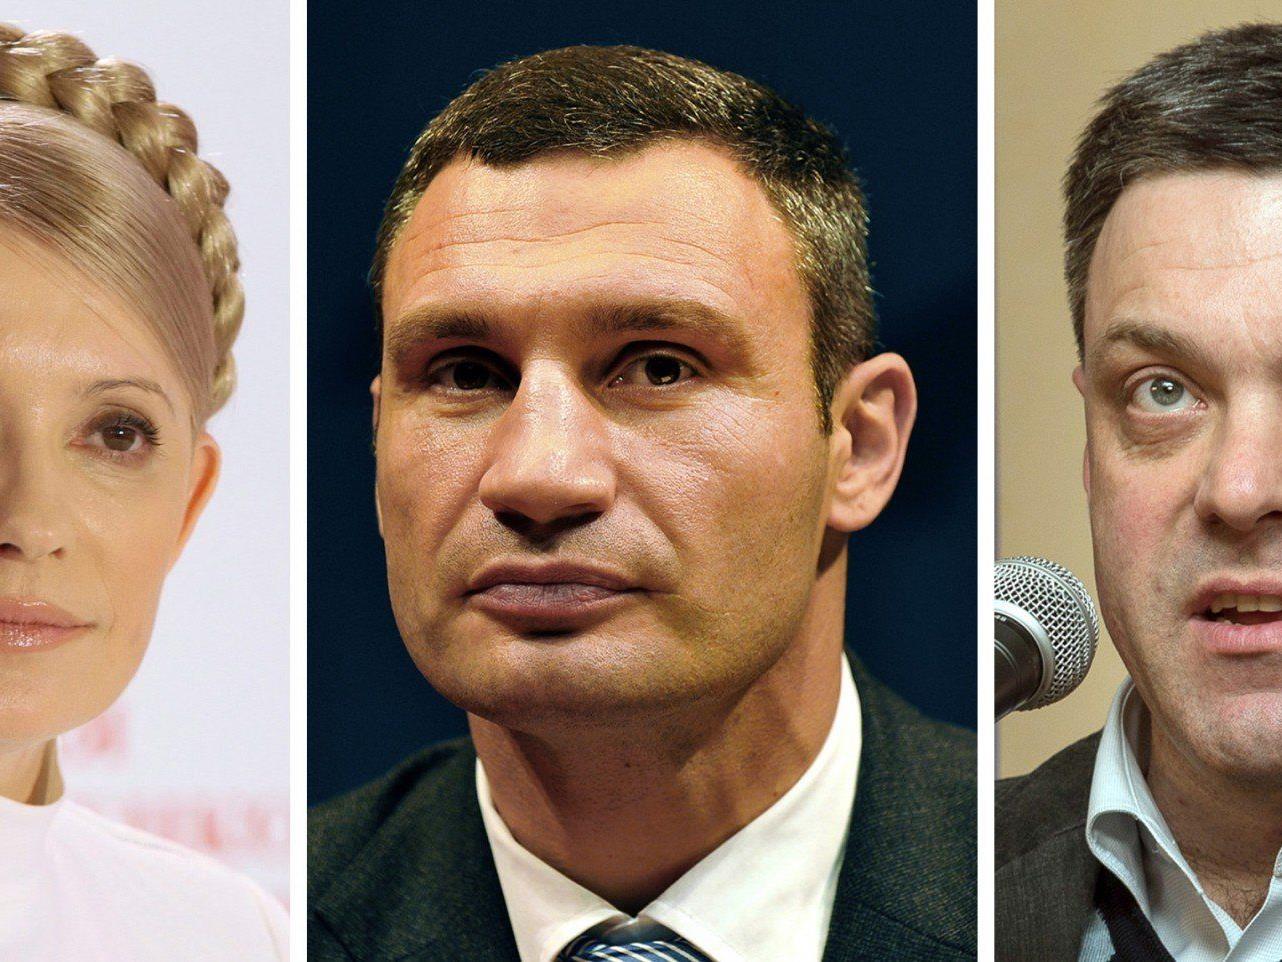 Das Bild zeigt die ukrainischen Politiker Julia Timoschenko, Vitali Klitschko und Oleg Tjagnibok.